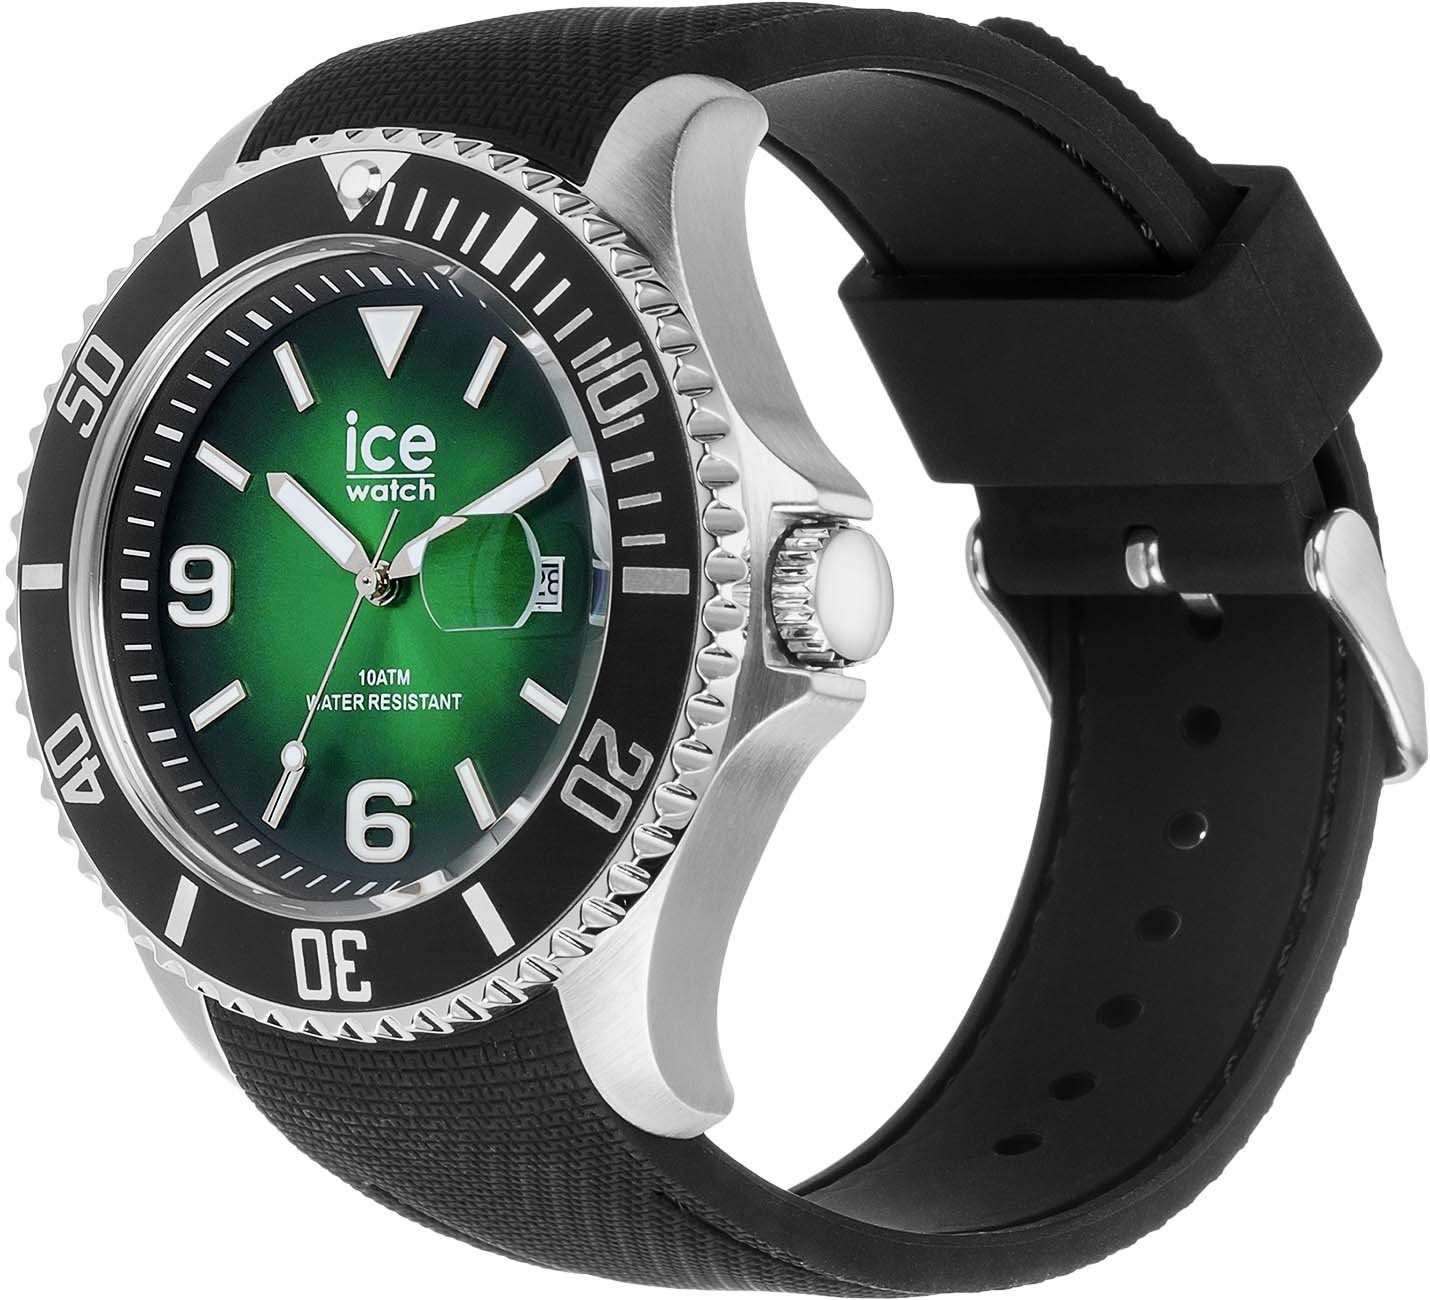 ICE ice-watch 020343 green Quarzuhr steel- grün L, Deep